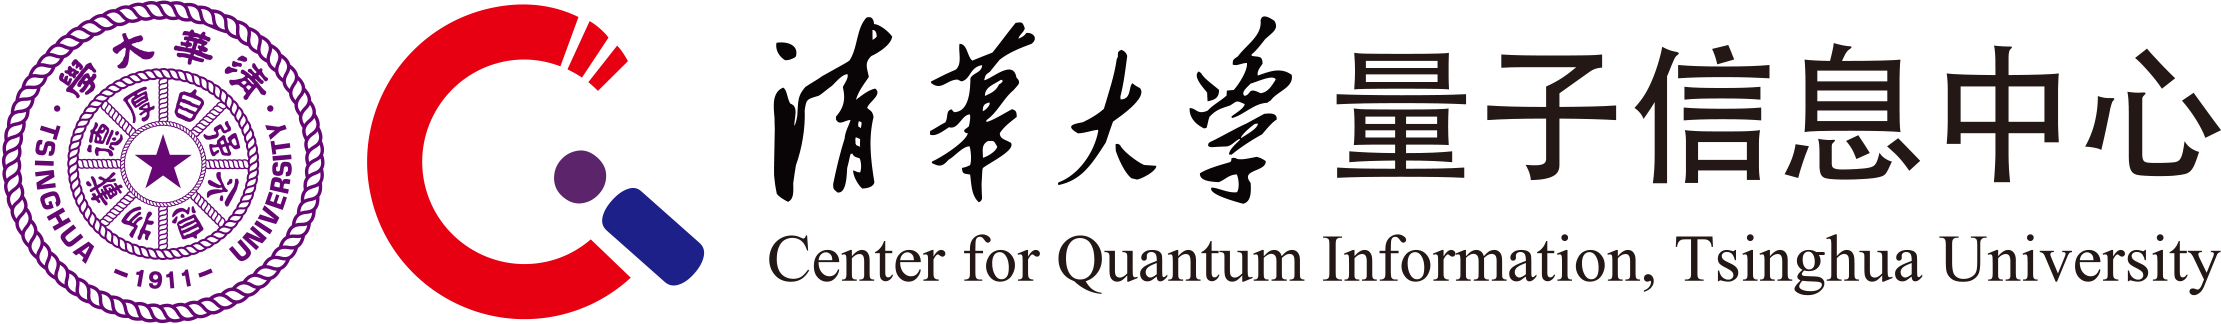 清华大学量子信息中心